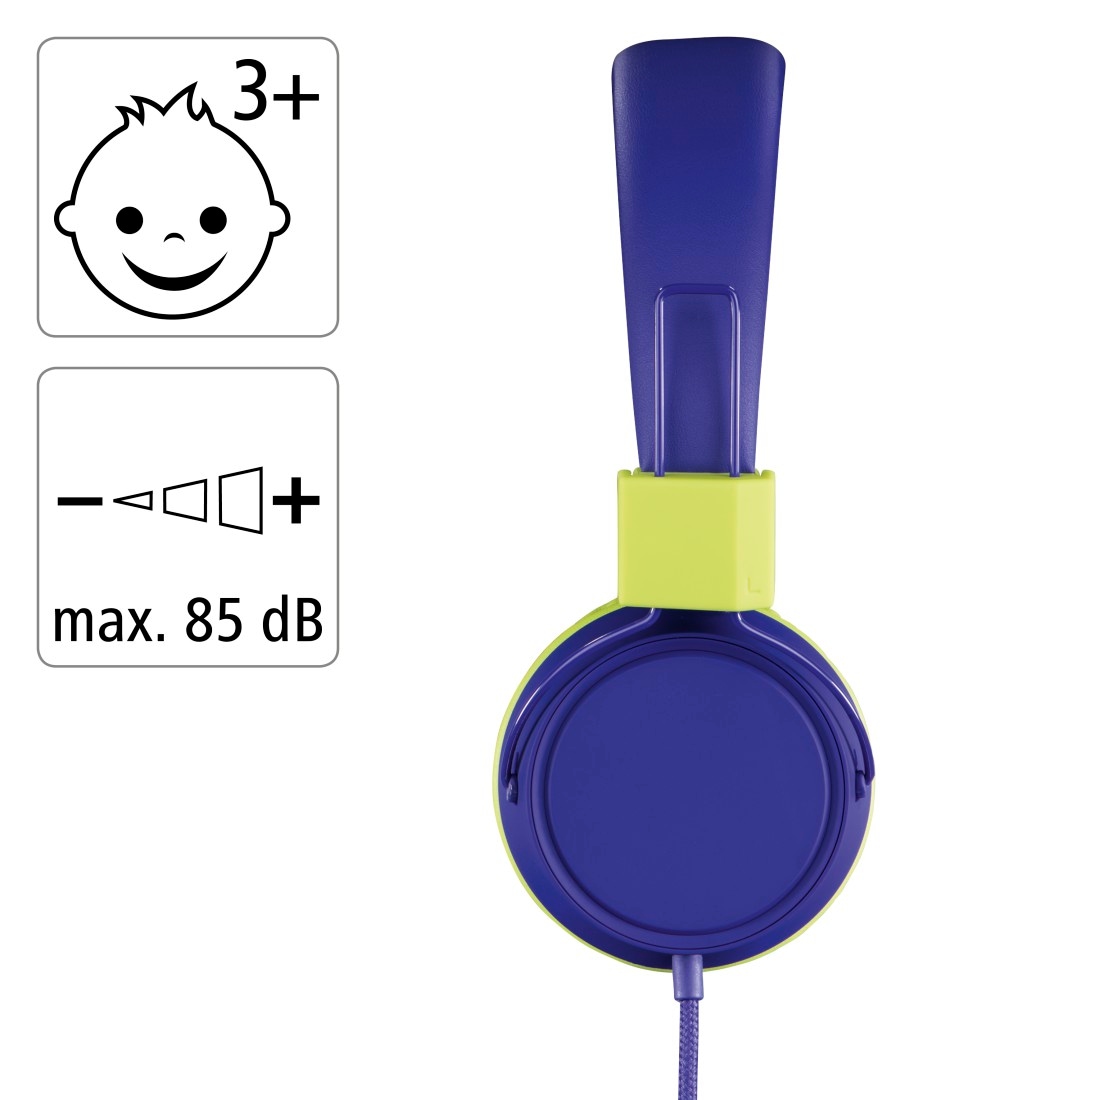 weiterer bestellen möglich mit Thomson leicht«, Kabel zusammenfaltbar, bei OTTO On-Ear, größenverstellbar On-Ear-Kopfhörer auf 85dB Kopfhöreranschluss »Kinderkopfhörer Lautstärkebegrenzung